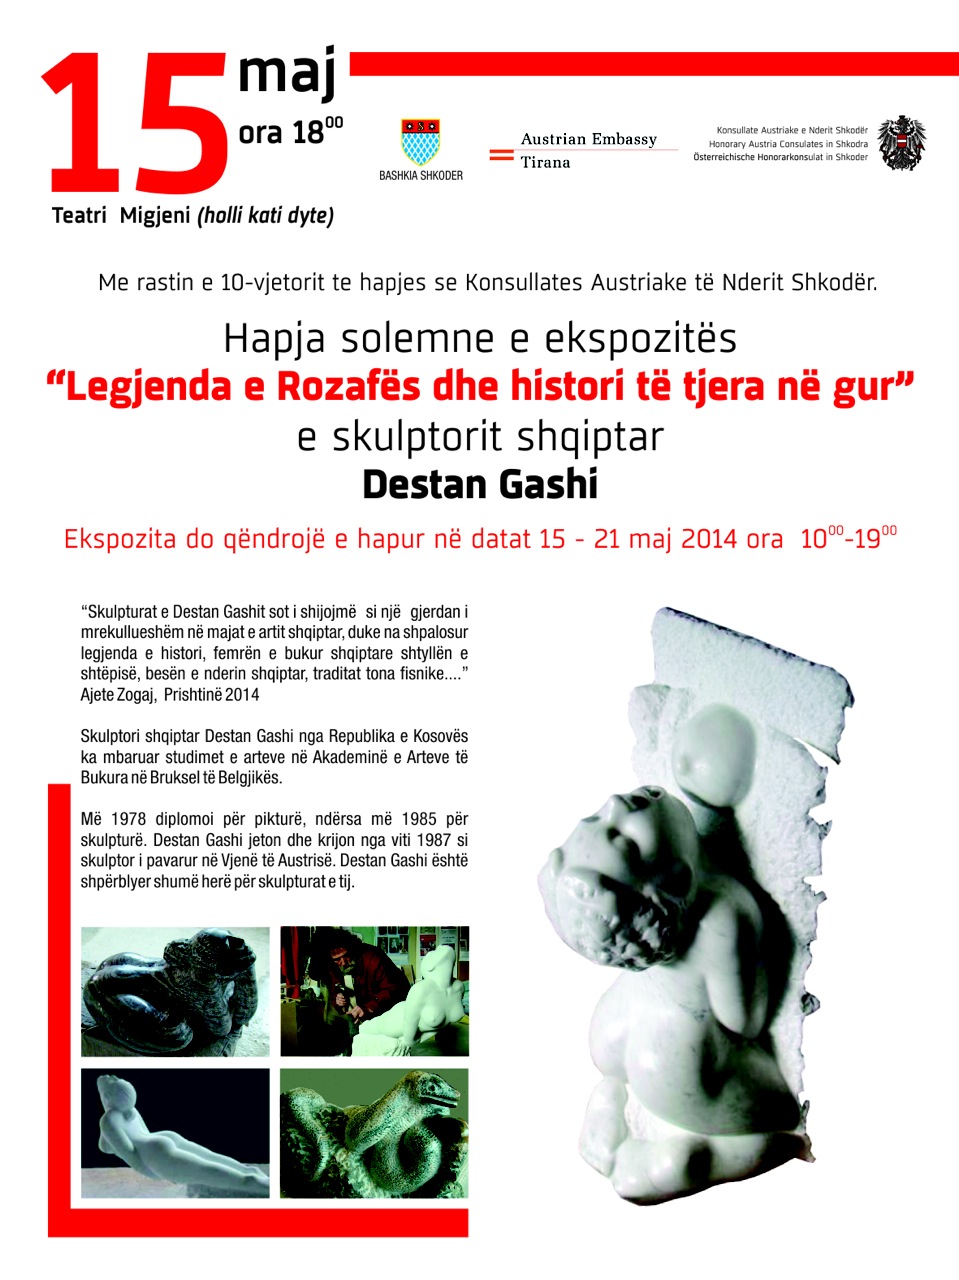 Einladung zur Ausstellung Destan Gashi Shkoder 2014